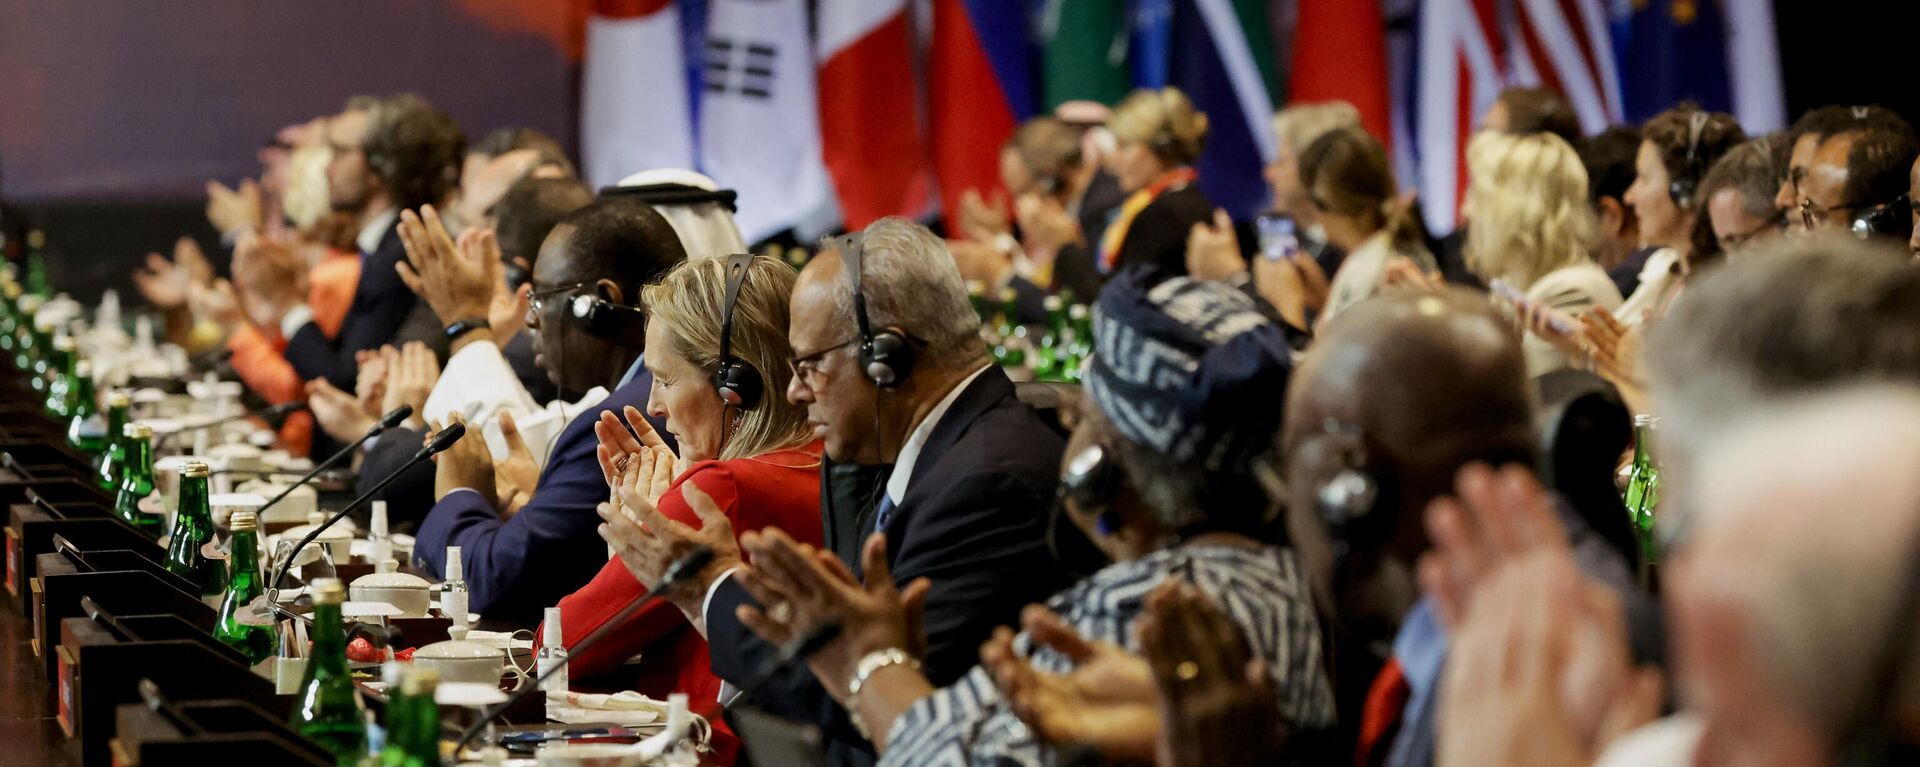 المندوبون يصفقون خلال حفل التسليم في قمة قادة مجموعة العشرين، في نوسا دوا، بالي، إندونيسيا 16 نوفمبر 2022. - سبوتنيك عربي, 1920, 22.01.2023